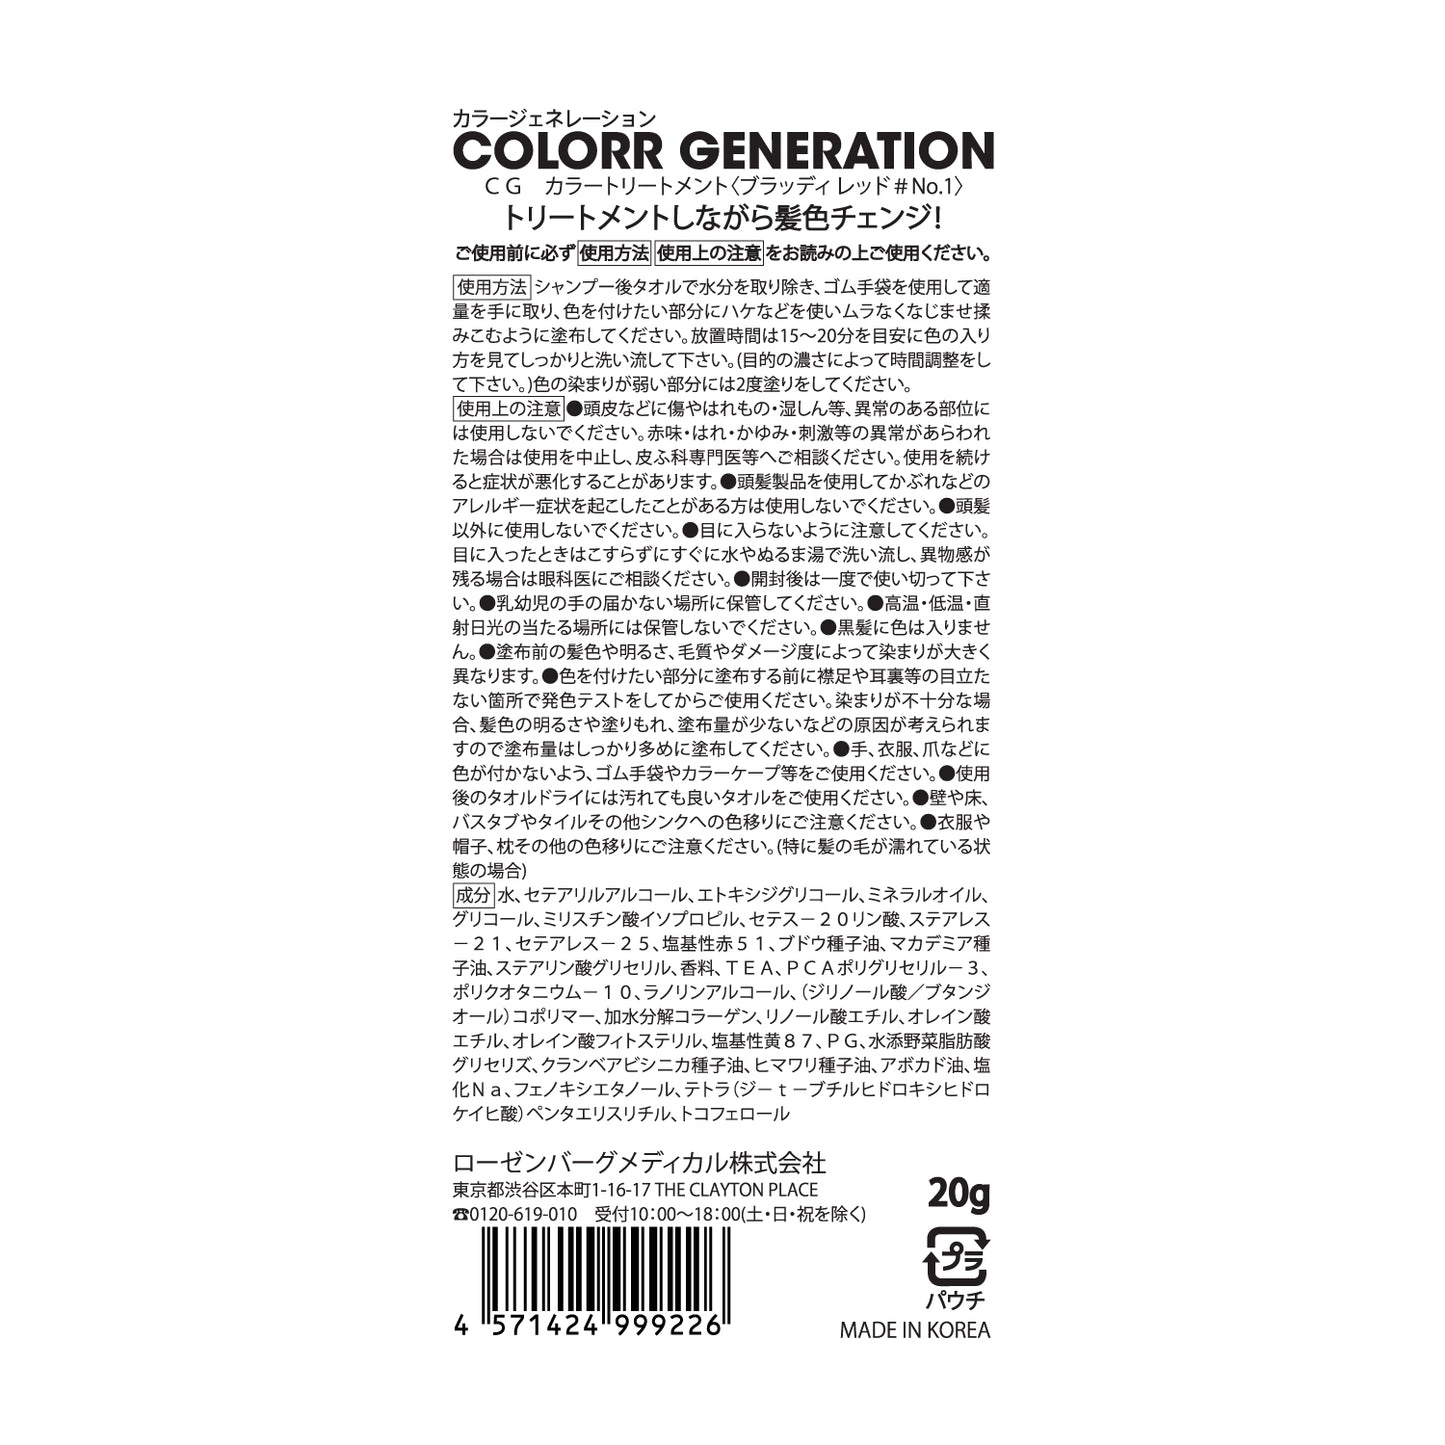 【お試しサイズ】新感覚のカラーヘアクリーム　COLORR GENERATION BLOODY RED＃No.1（ブラッディ レッド＃No.1）